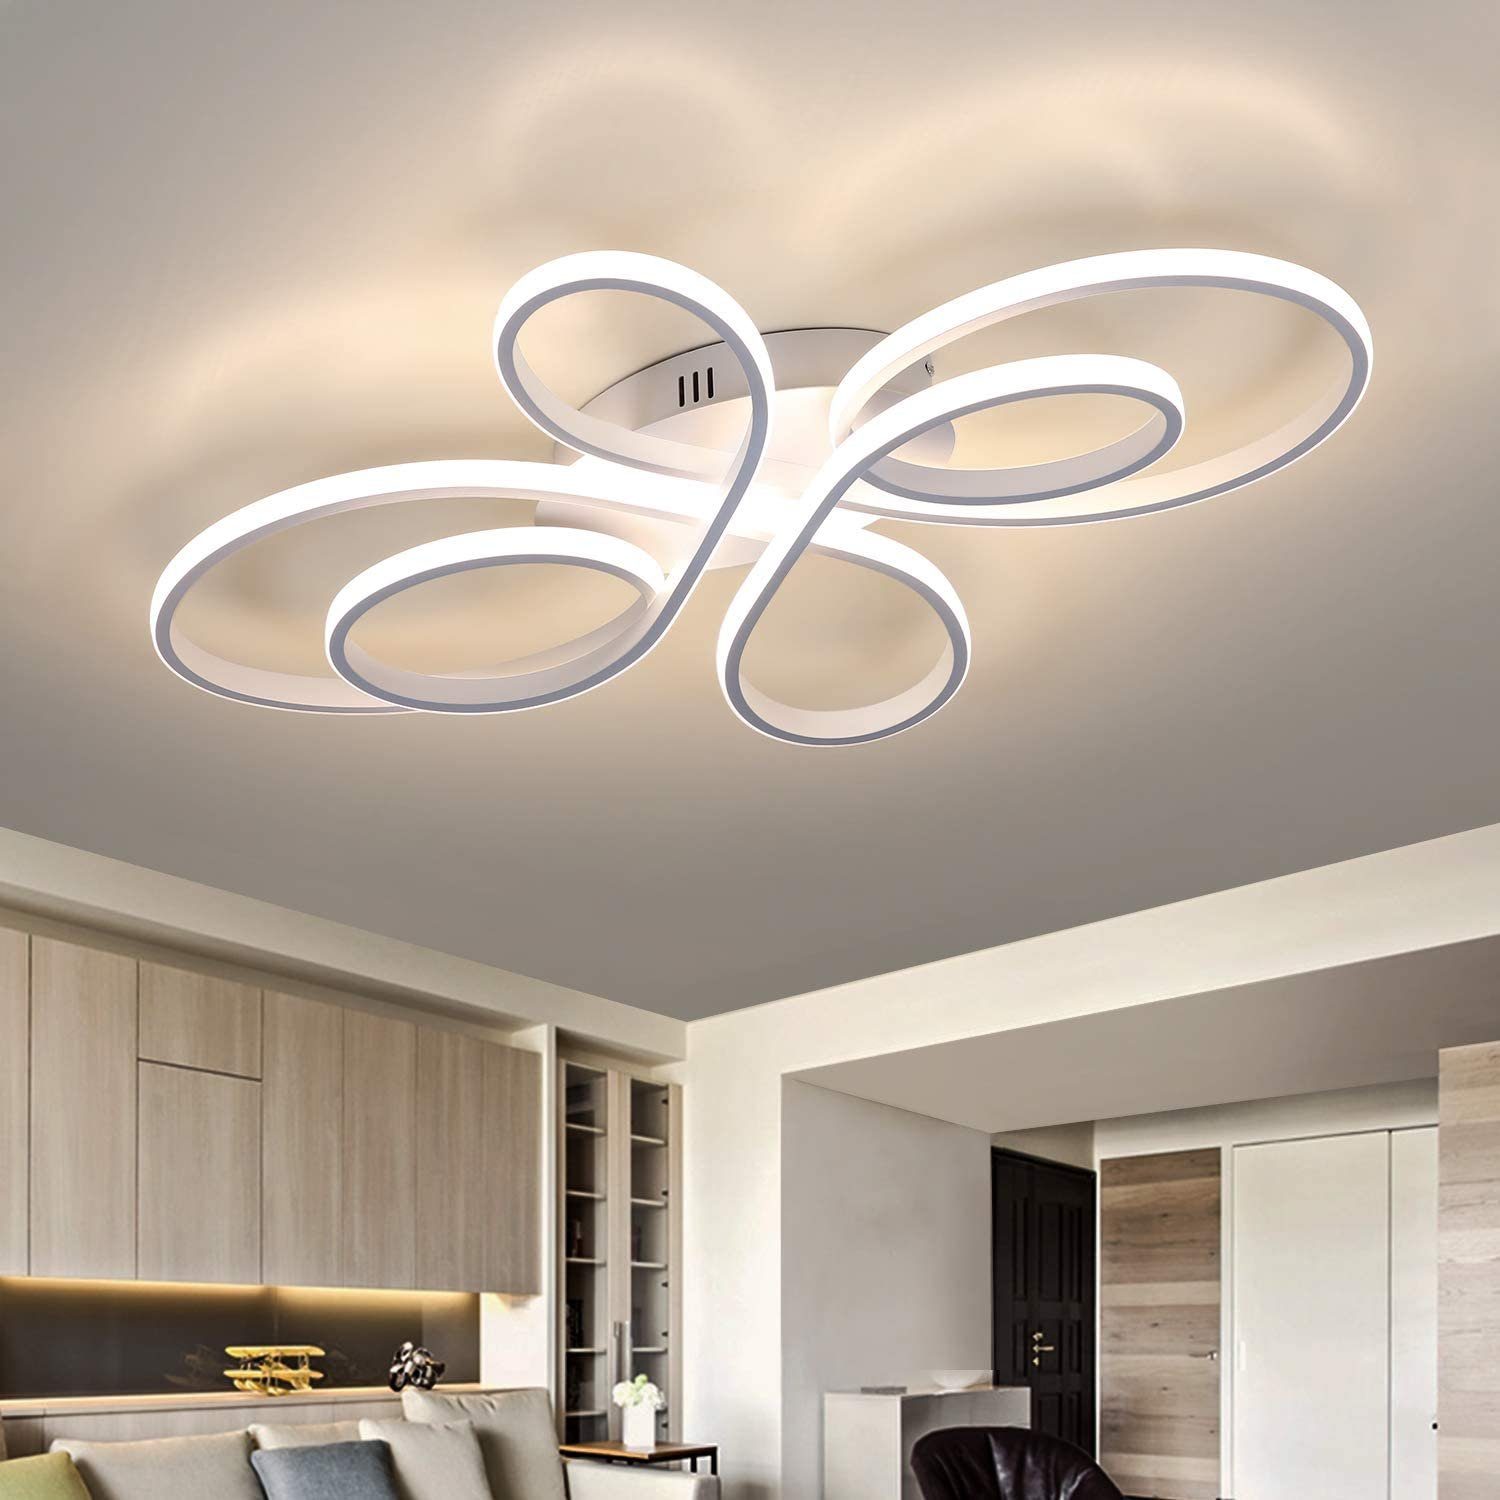 ZMH LED Deckenleuchte »LED Deckenleuchte Wohnzimmer Moderne LED Deckenlampe  Dimmbar mit Fernbedienung 65 Watt aus Metall in Schmetterlingforming Design  für Schlafzimmer« online kaufen | OTTO